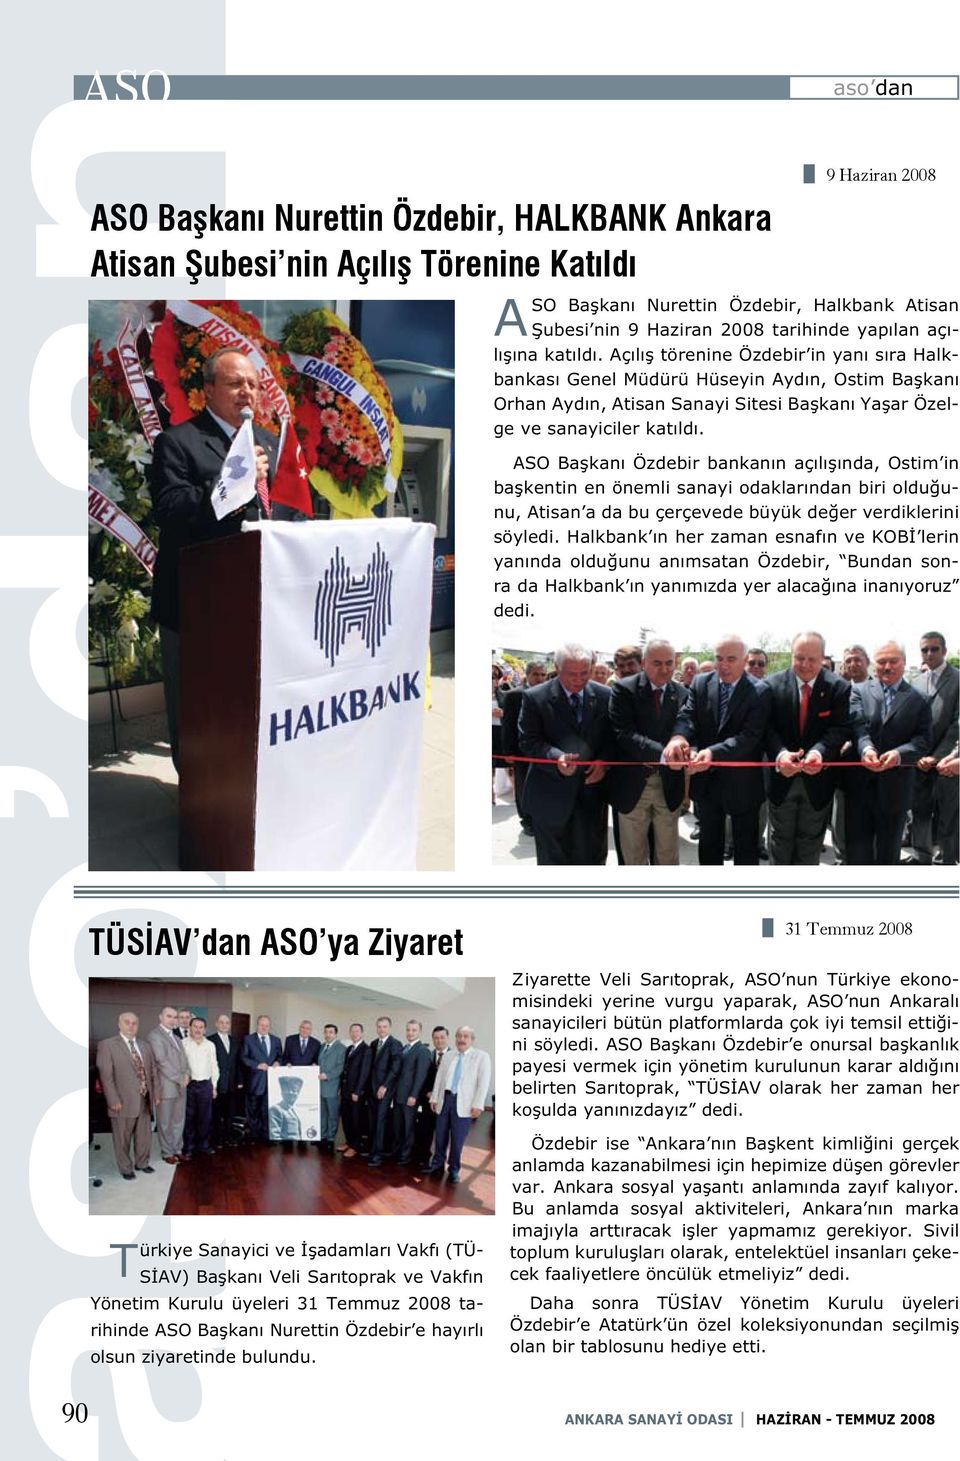 ASO Başkanı Özdebir bankanın açılışında, Ostim in başkentin en önemli sanayi odaklarından biri olduğunu, Atisan a da bu çerçevede büyük değer verdiklerini söyledi.